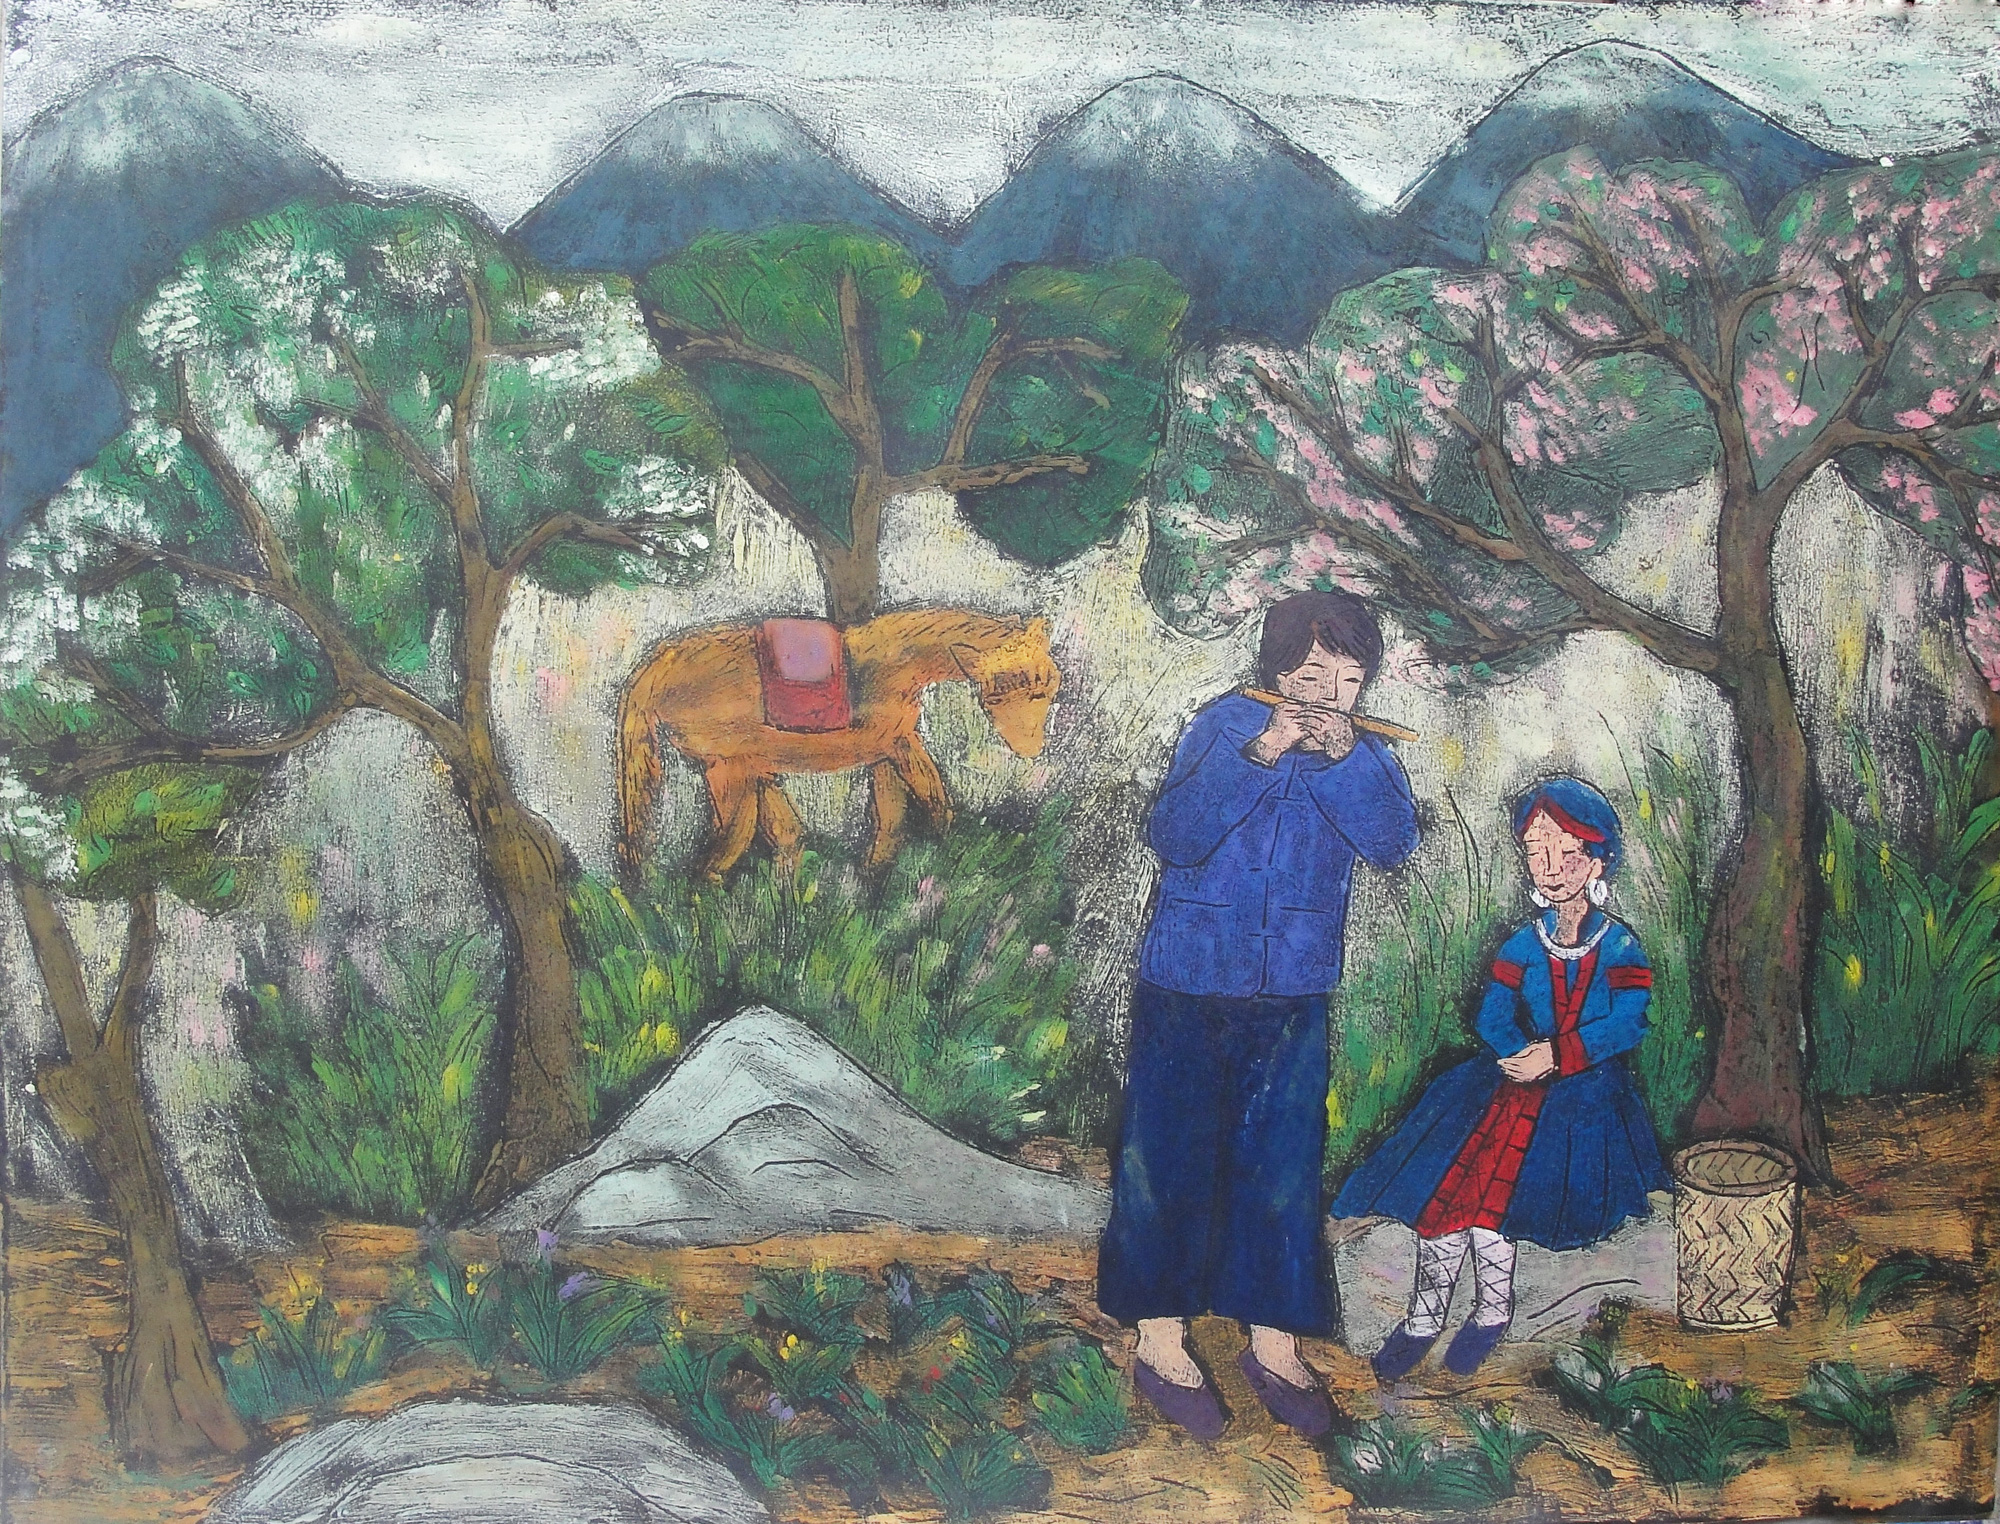 Giới thiệu gần 40 tác phẩm của nhóm họa sĩ Bảo tàng Mỹ thuật Việt Nam - Ảnh 6.